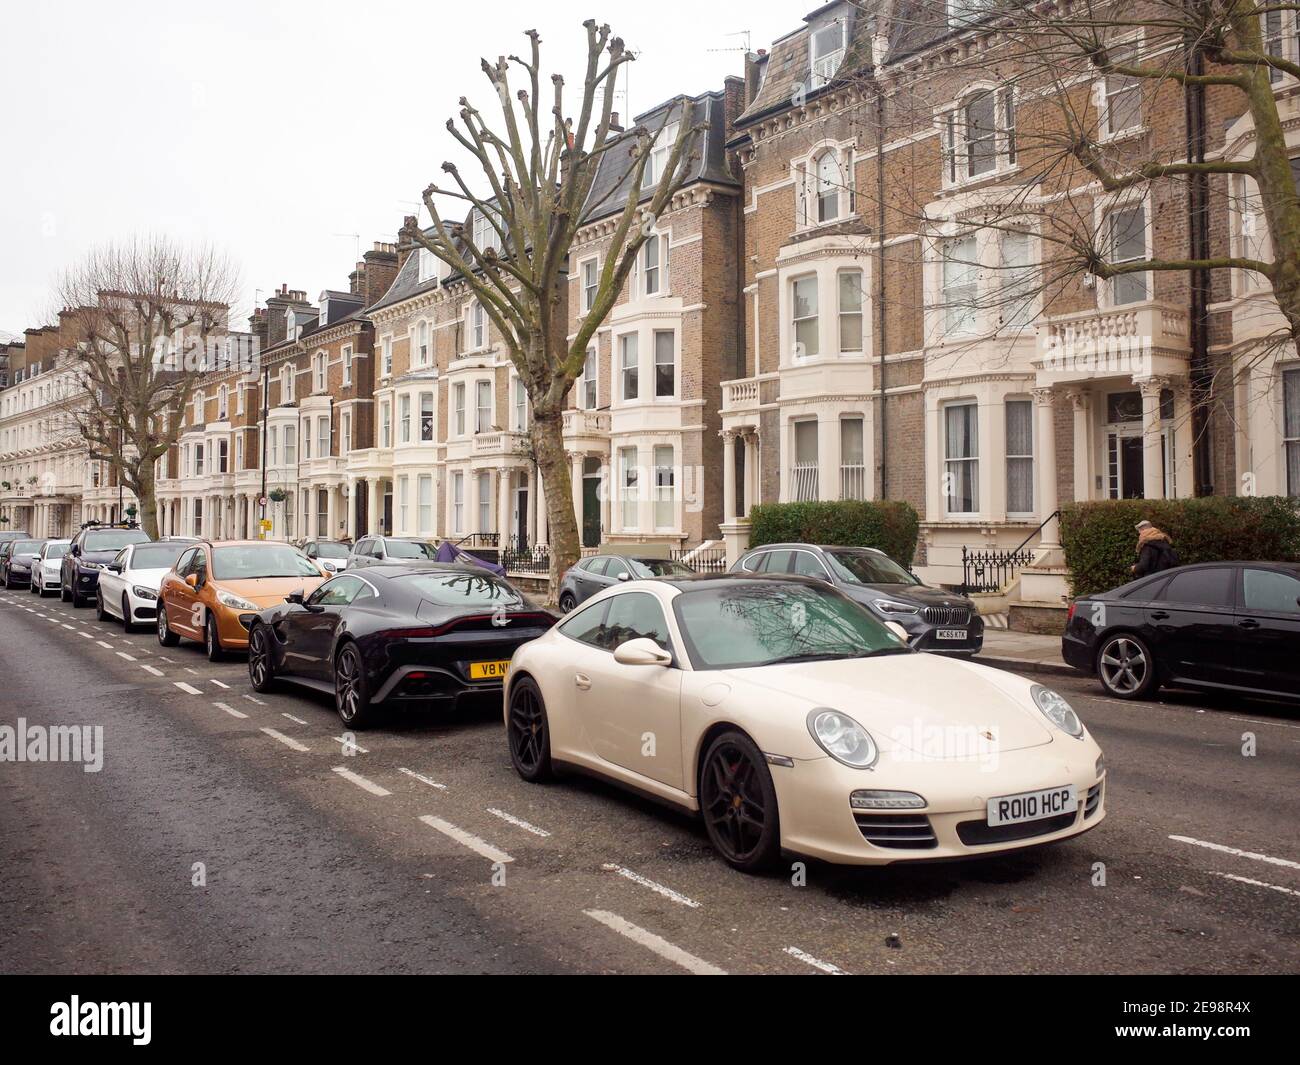 Londres - voitures chères garées sur la rue haut de gamme dans la région de Maida Vale de Paddington, dans le nord-ouest de Londres Banque D'Images